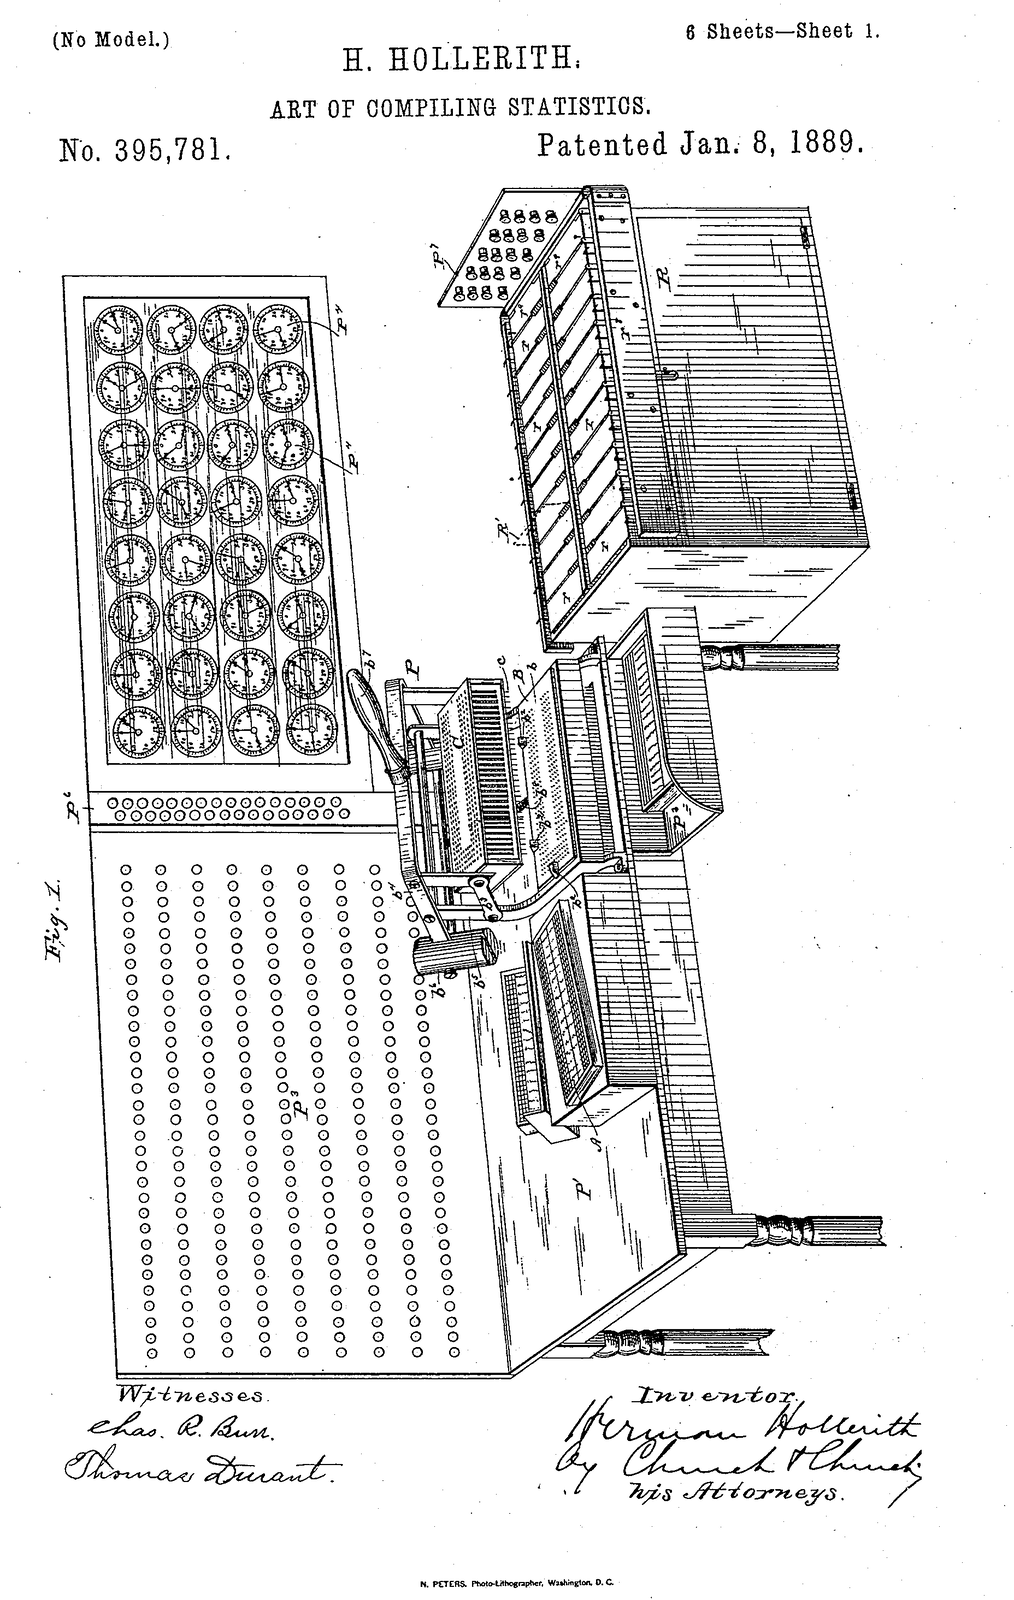 Rysunek przedstawia maszynę licząco‑analityczną. Widoczne są zegary oraz tablica z otworami. Przy części biurkowej znajdują się matryce. Na rysunku zapisano, że została opatentowana w styczniu 1889 roku.